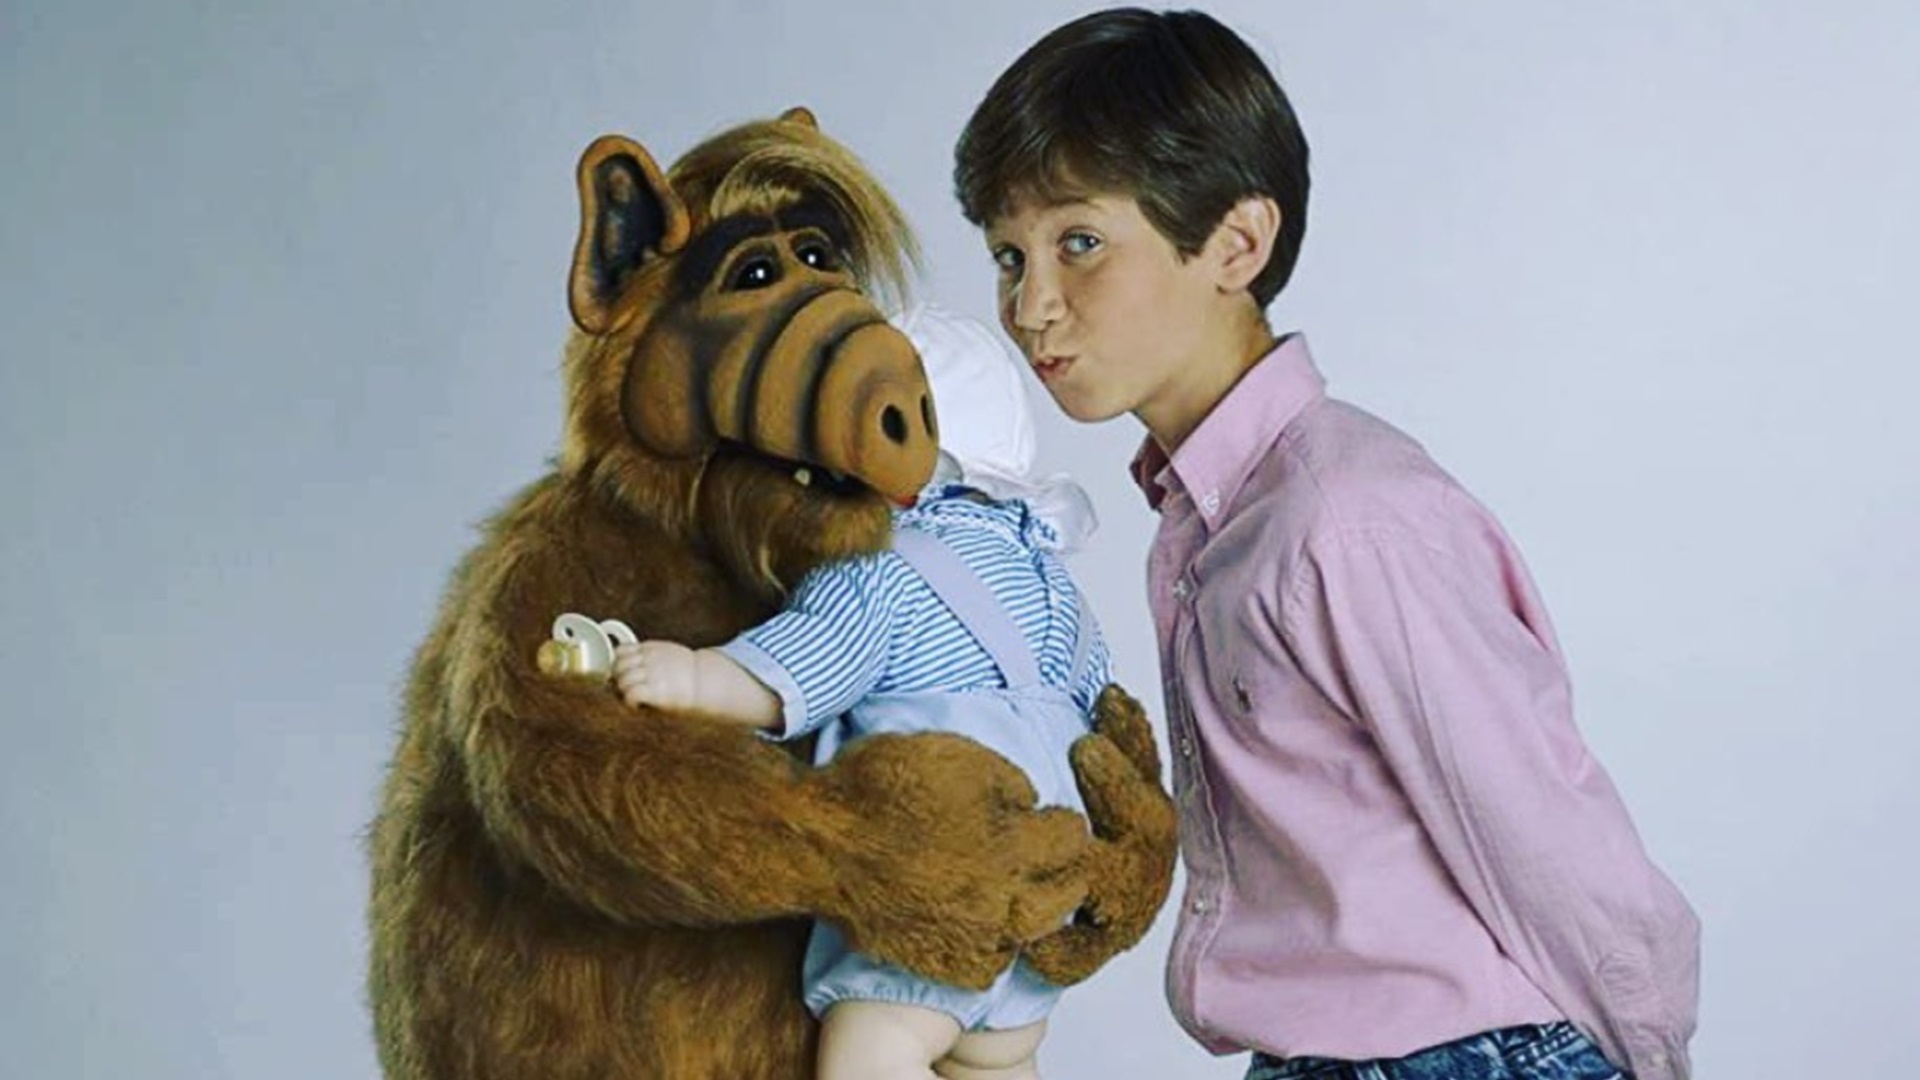 Las extrañas circunstancias de la muerte de Benji Gregory, protagonista de 'Alf'